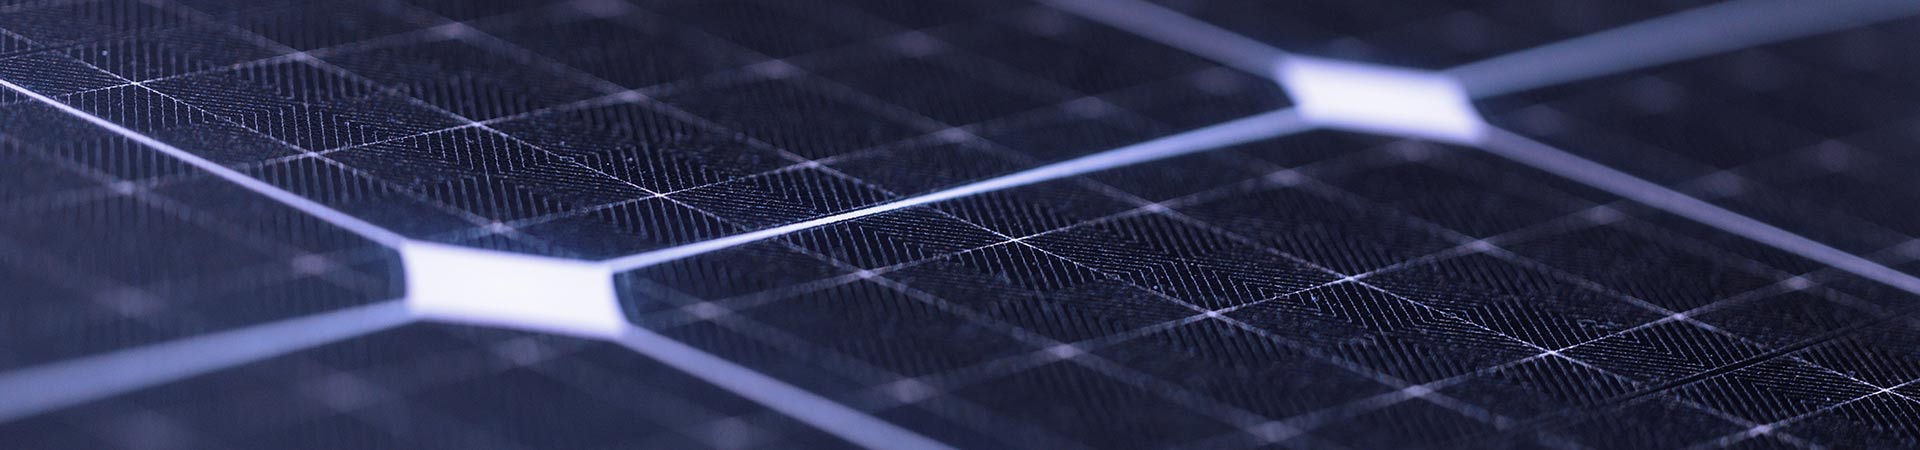 Realizzare una tettoia fotovoltaica per risparmiare energia